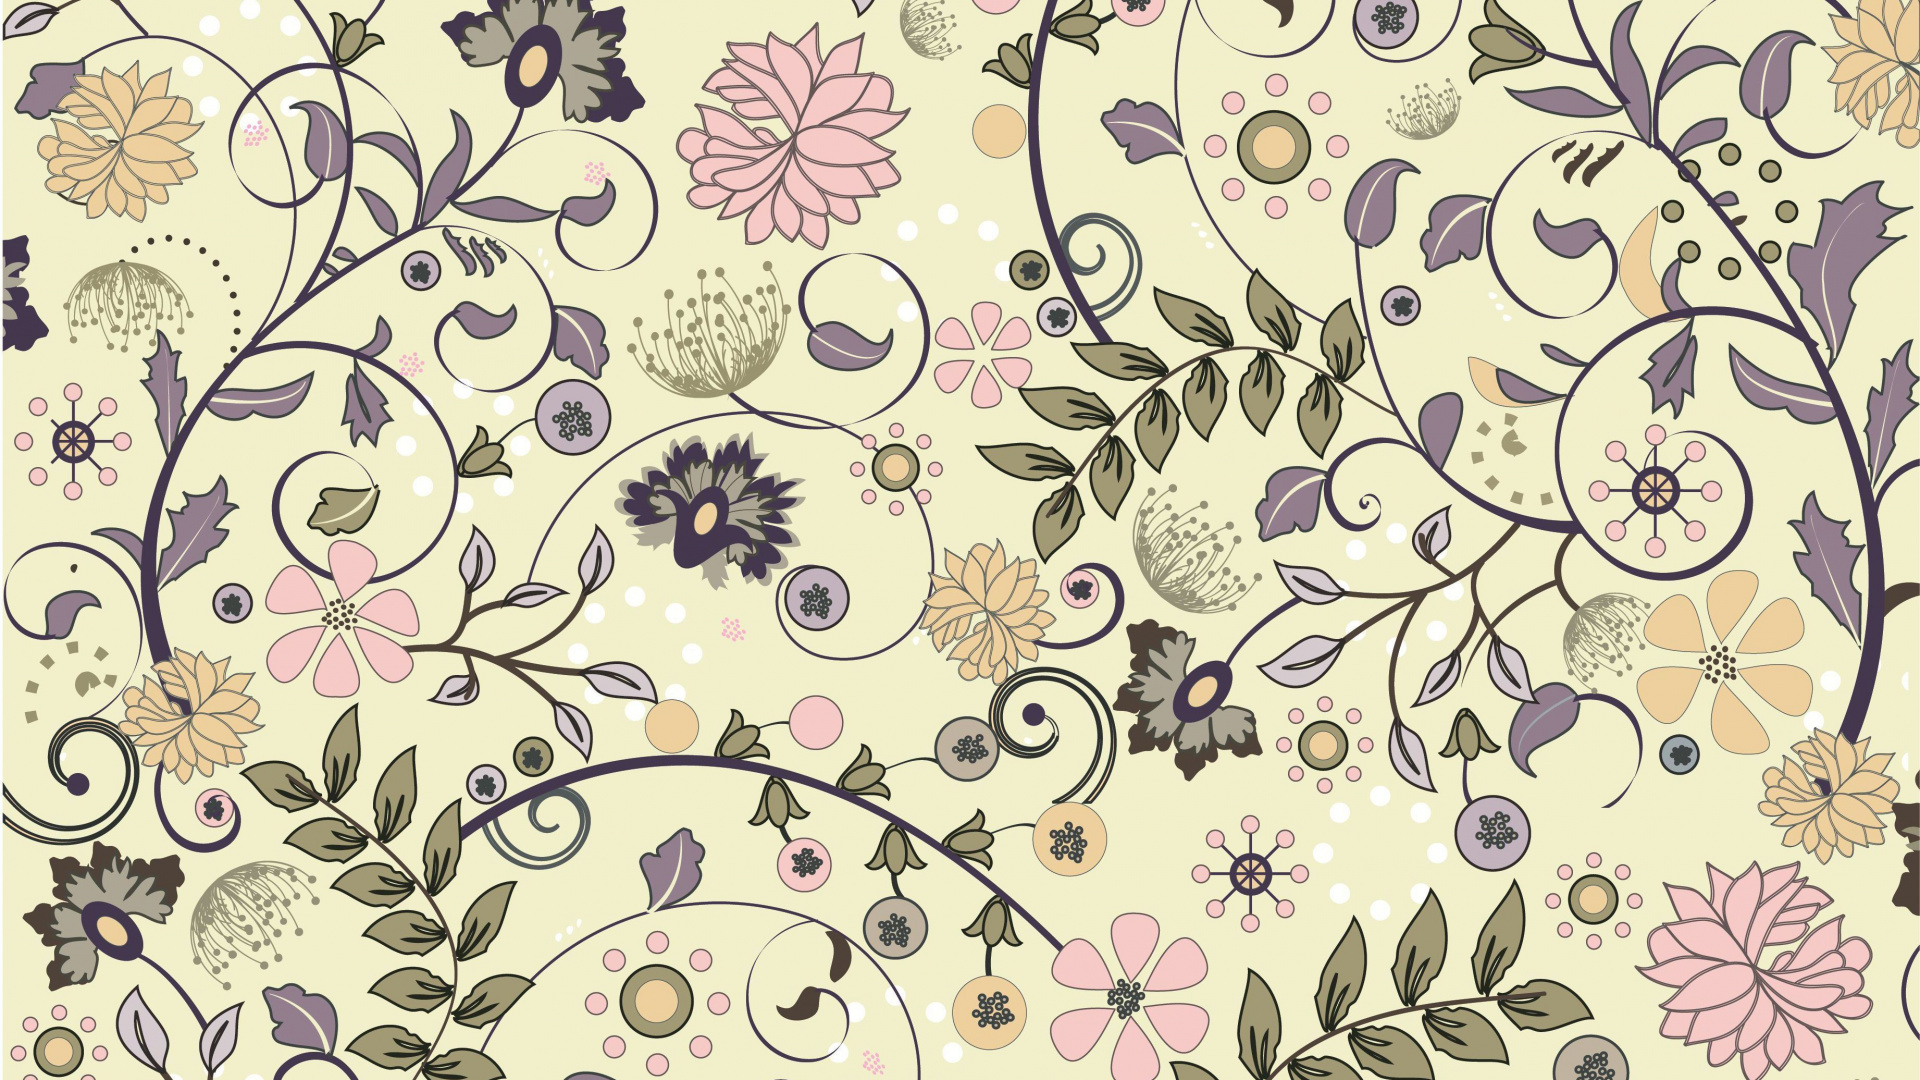 剪贴画的, 矢量图形, 花卉设计, 淡紫色的, 花安排 壁纸 1920x1080 允许